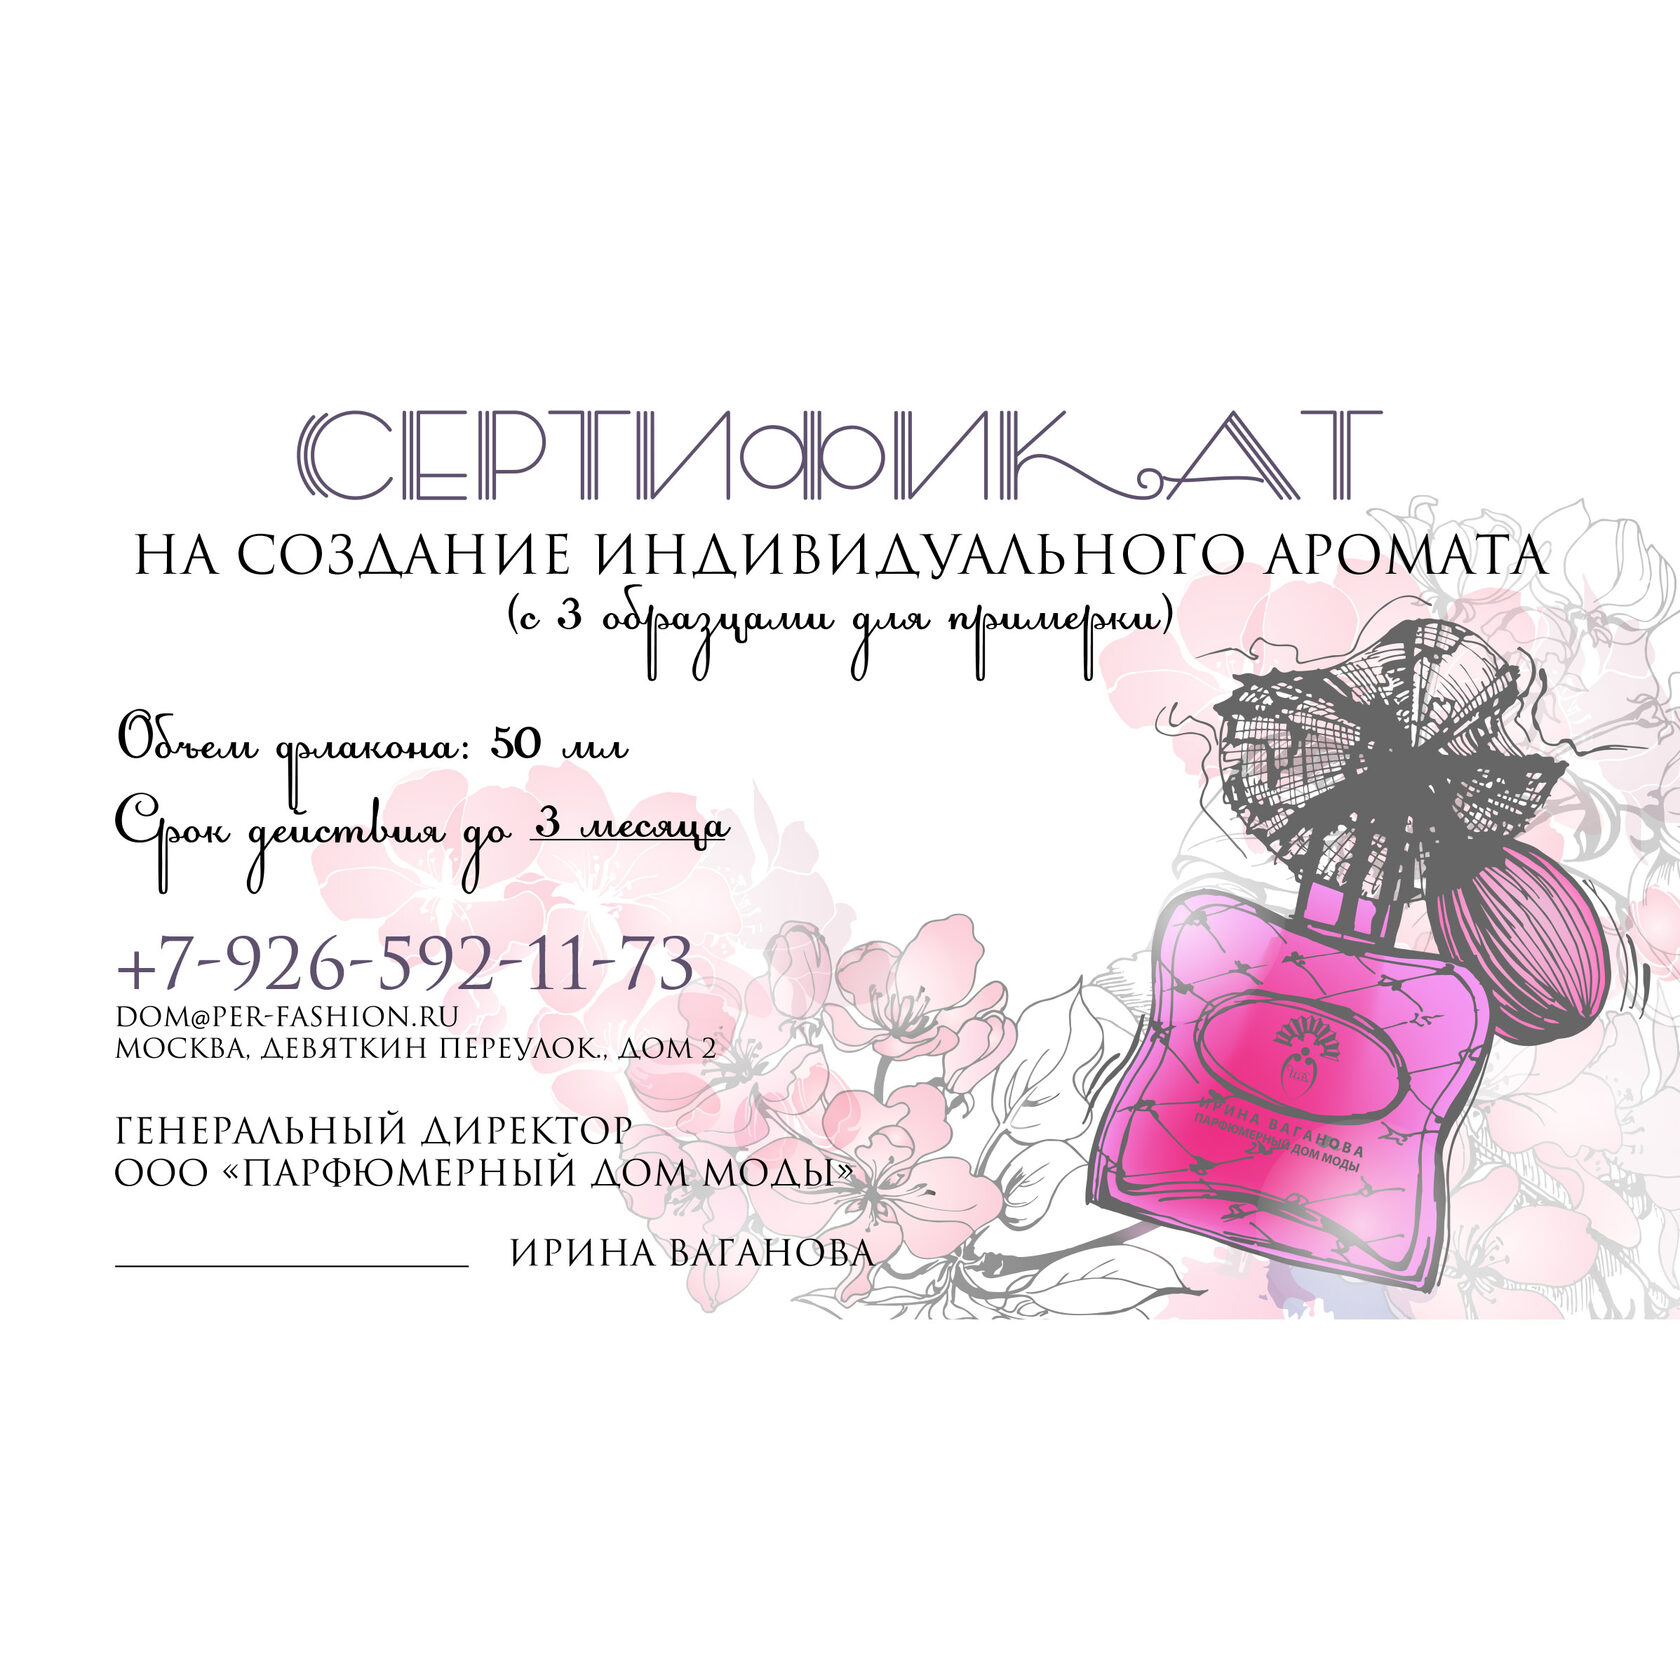 Сертификат в парфюм